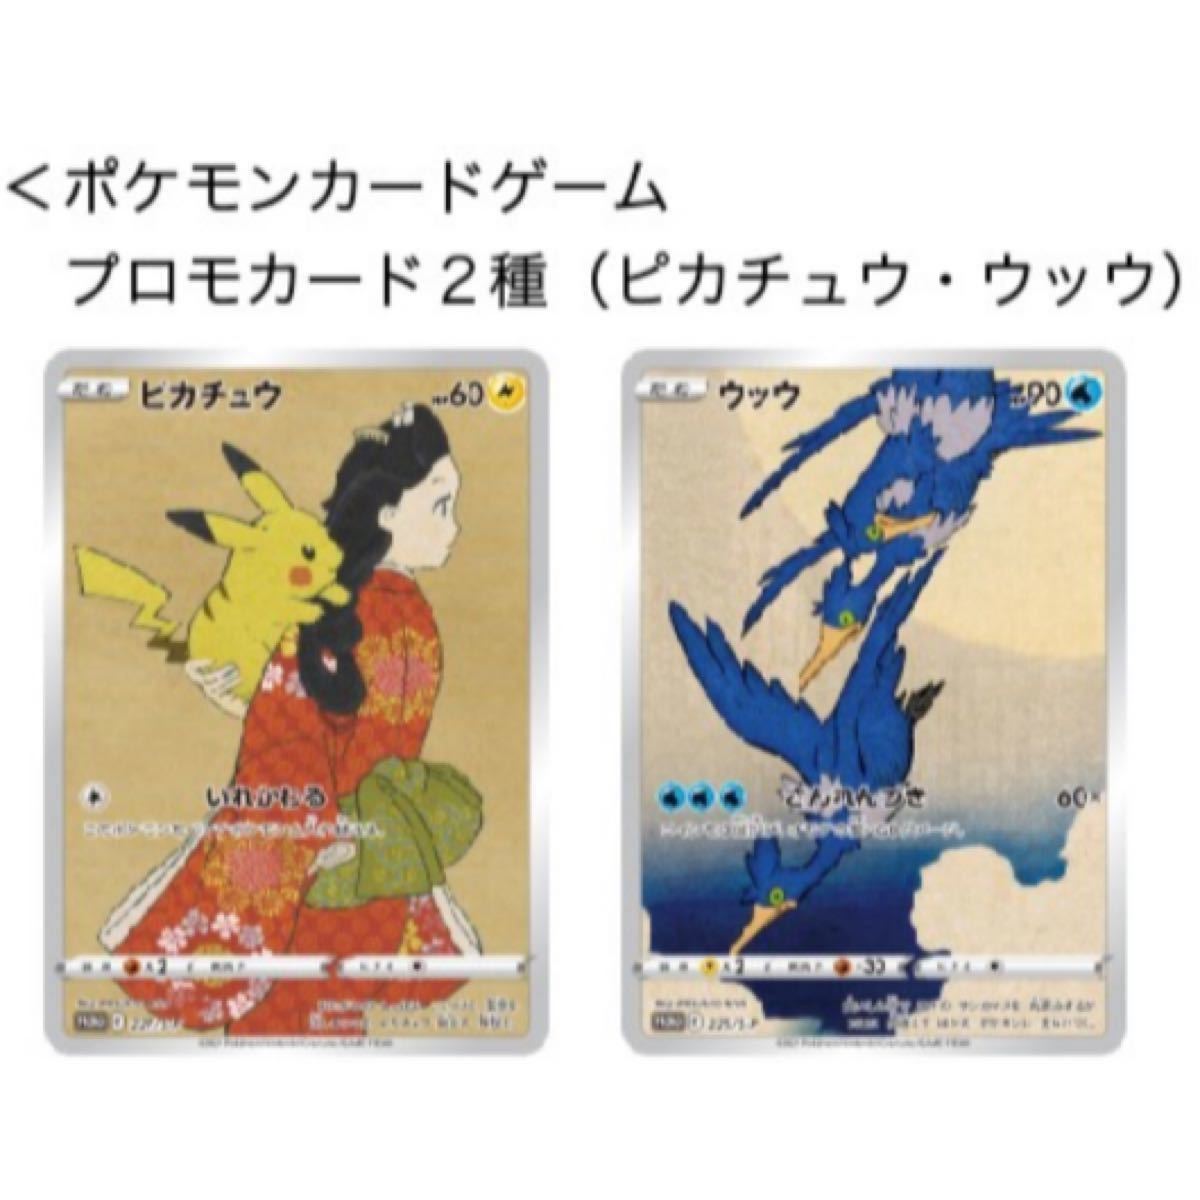 ☆ポケモン☆プロモカード カードゲーム 見返り美人 月に雁 セット ポケットモンスター ピカチュウ ウッウ